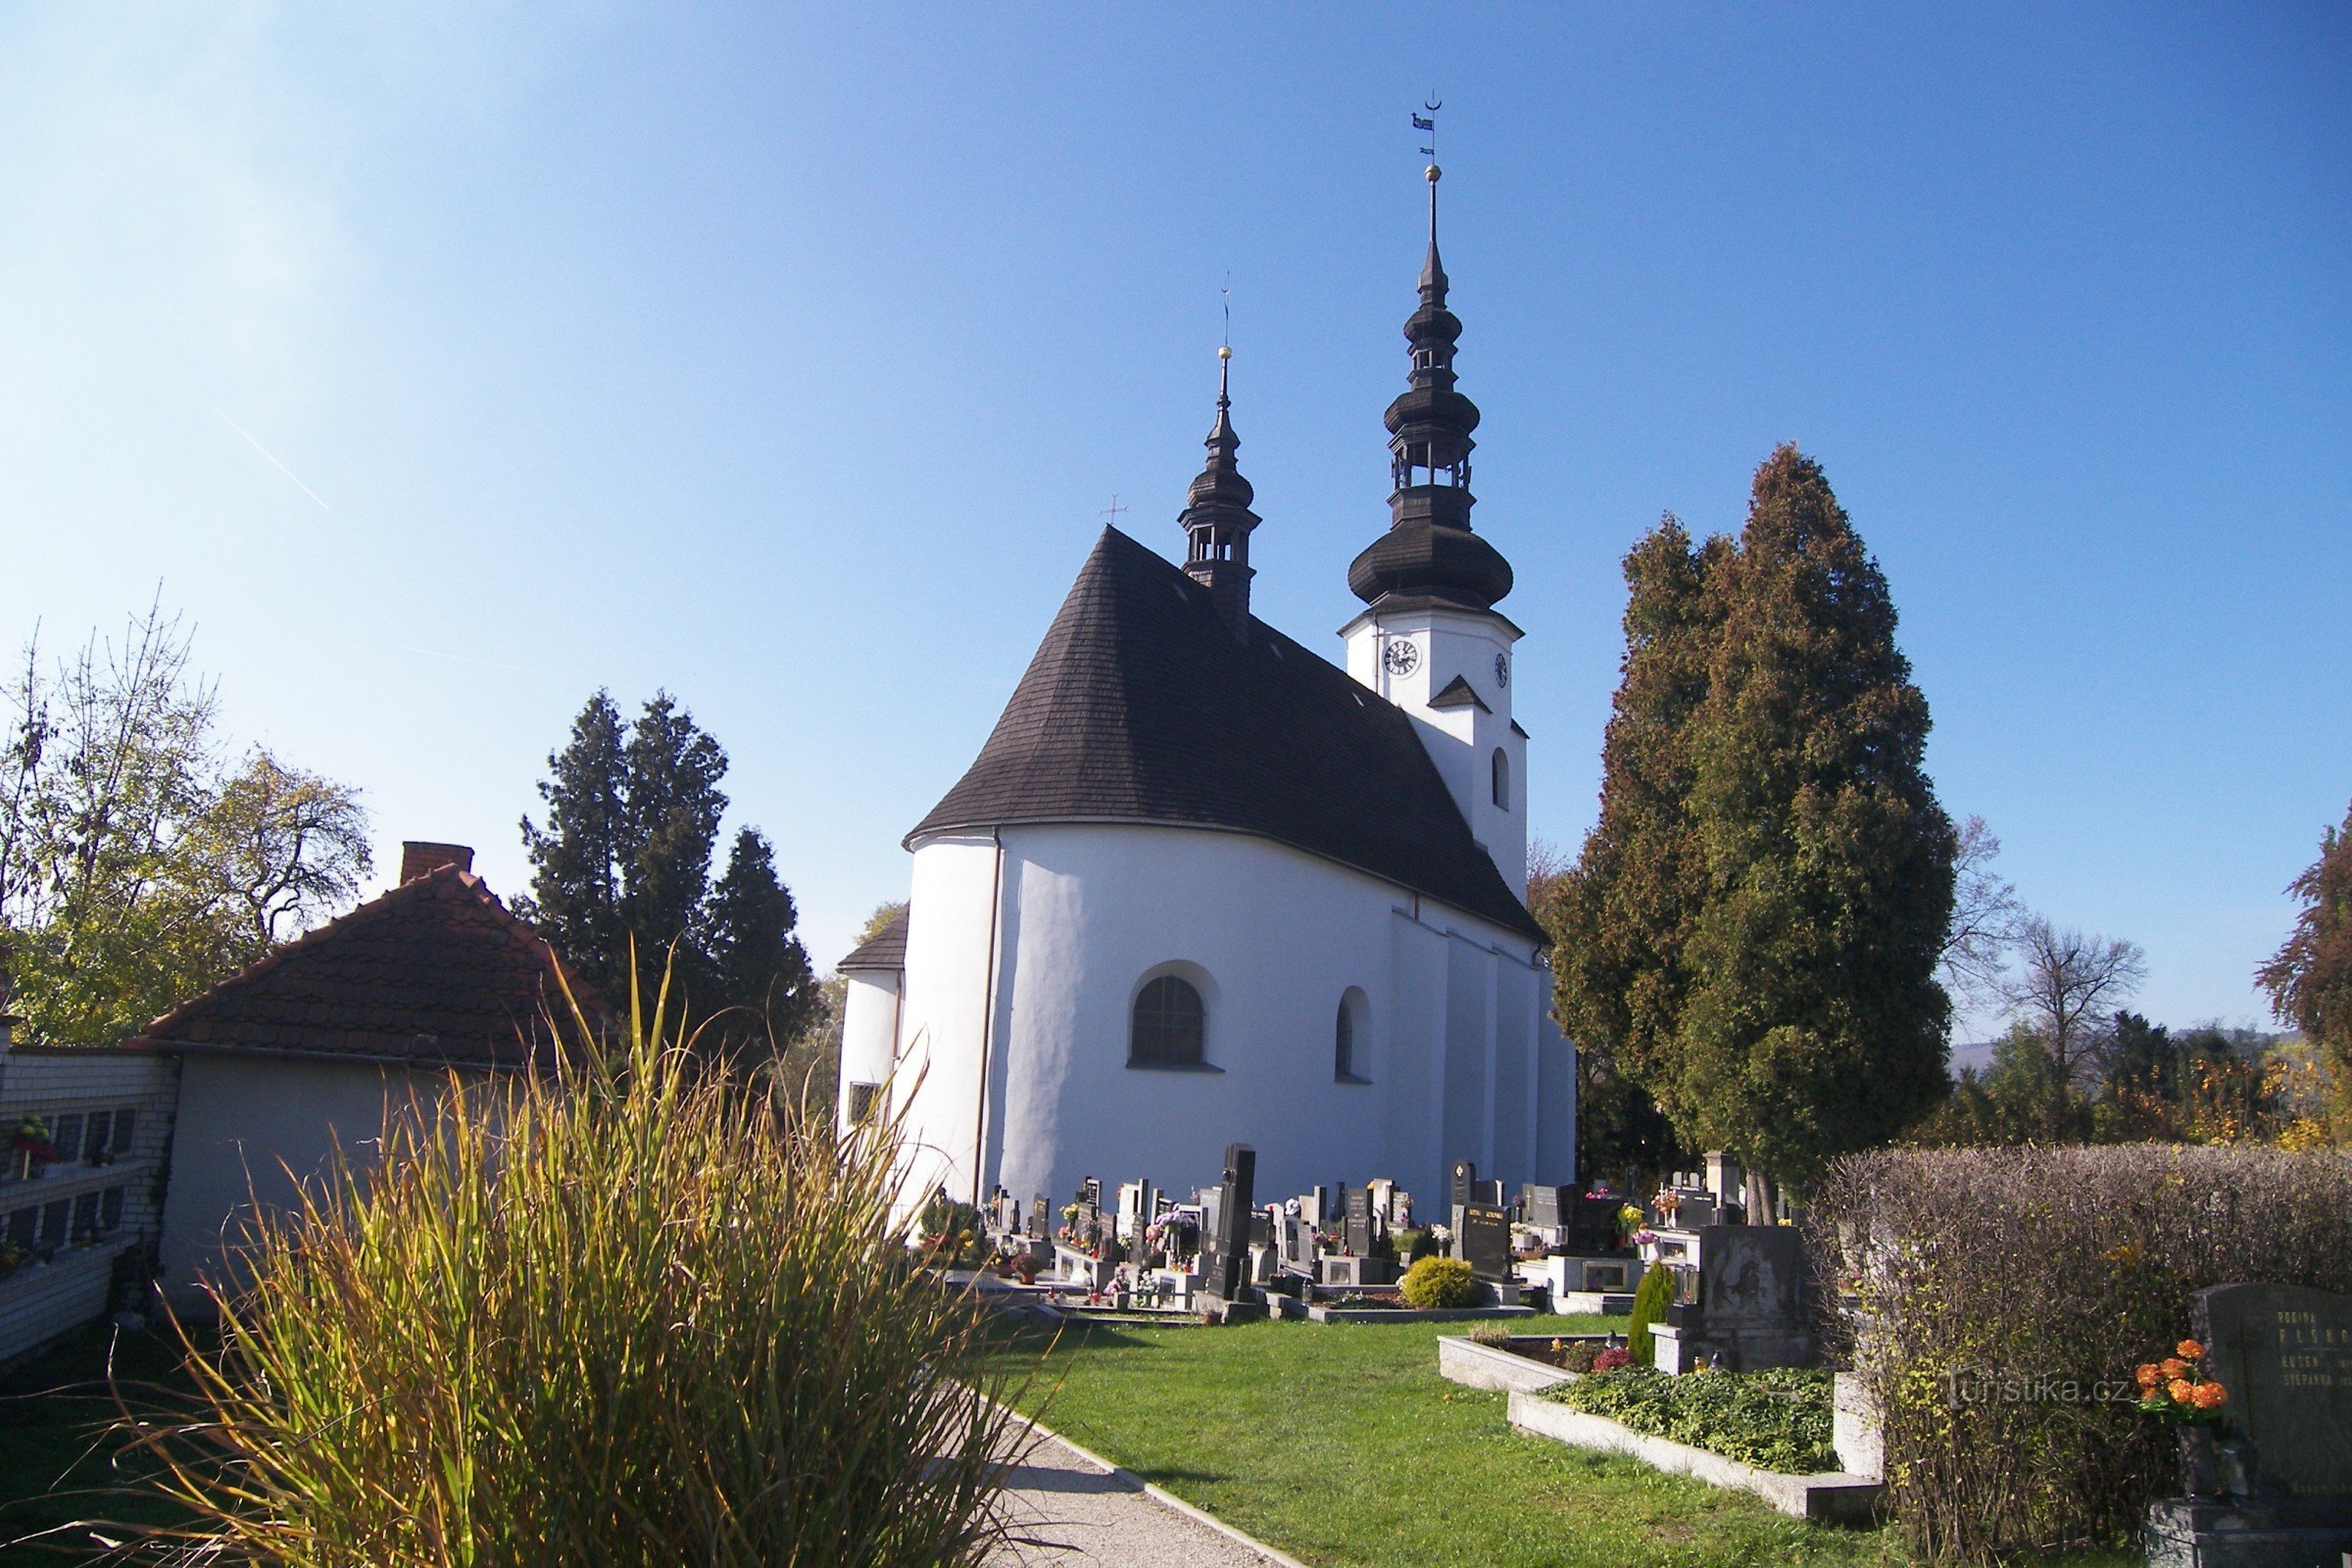 Suchdol nad Odrou - parish church of the Holy Trinity